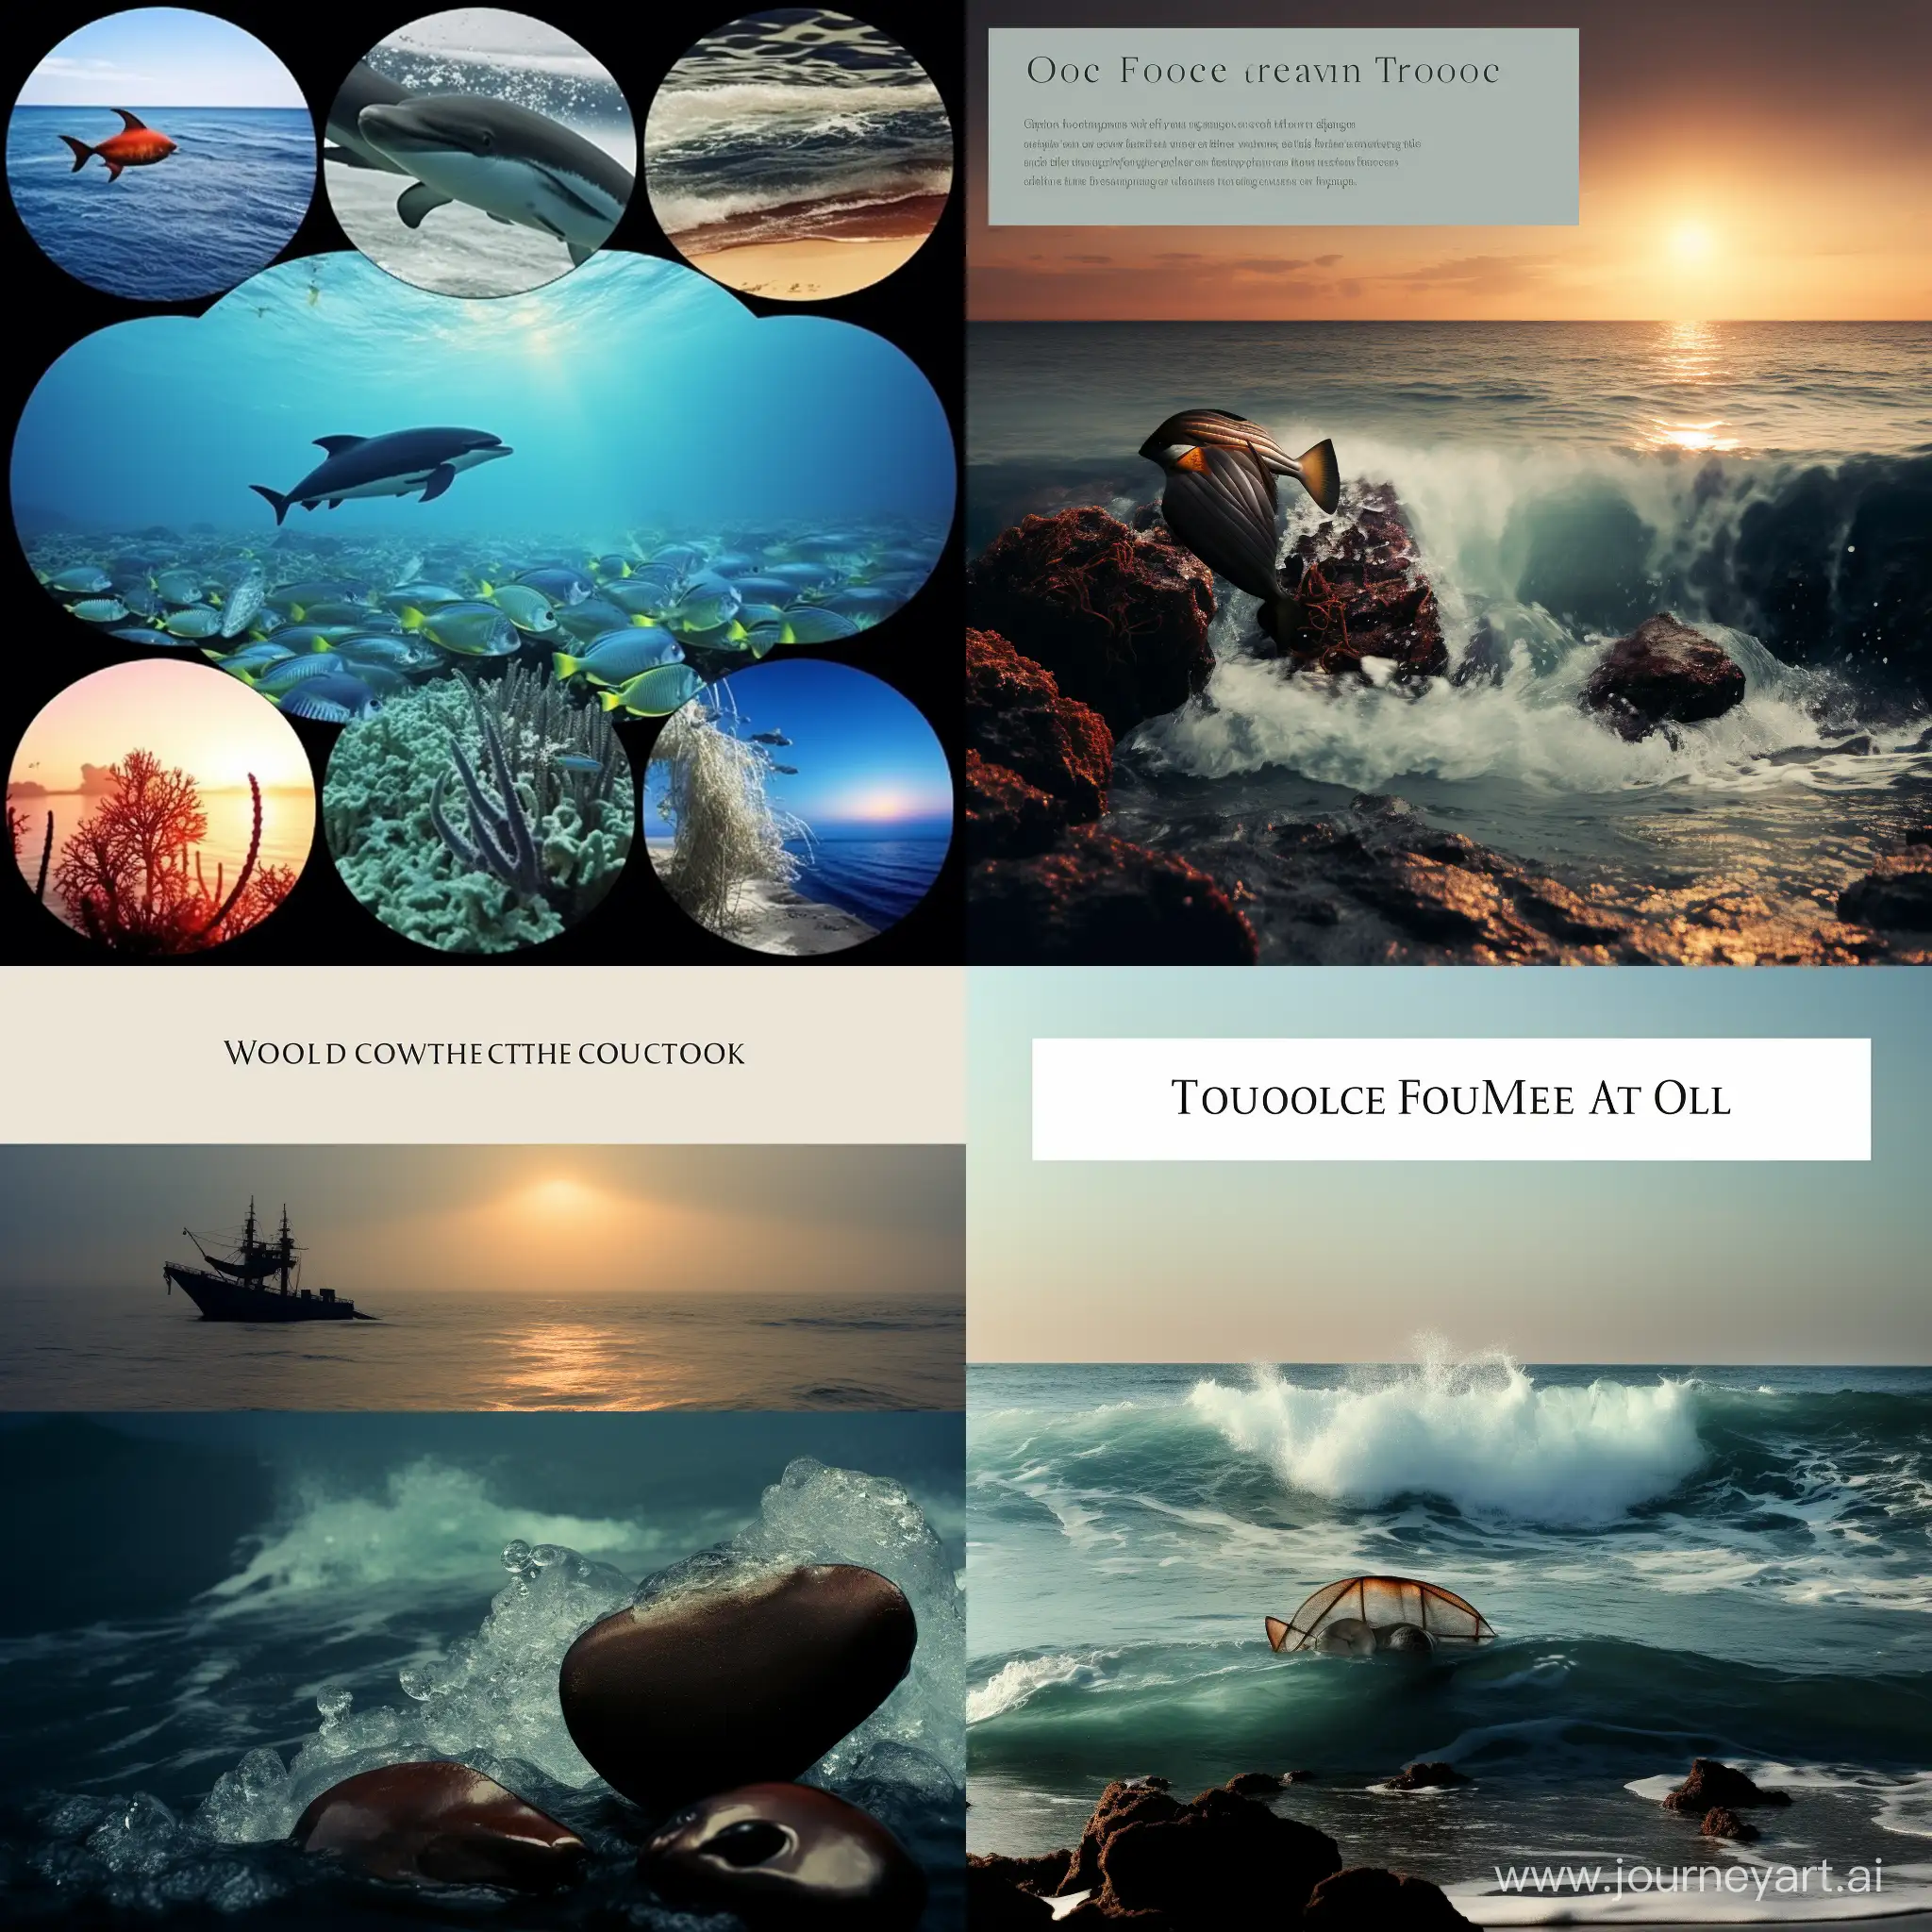 Сделай мне, пожалуйста, презентацию на тему "Ресурсы мирового океана" с картинками на 5 слайдов без текста